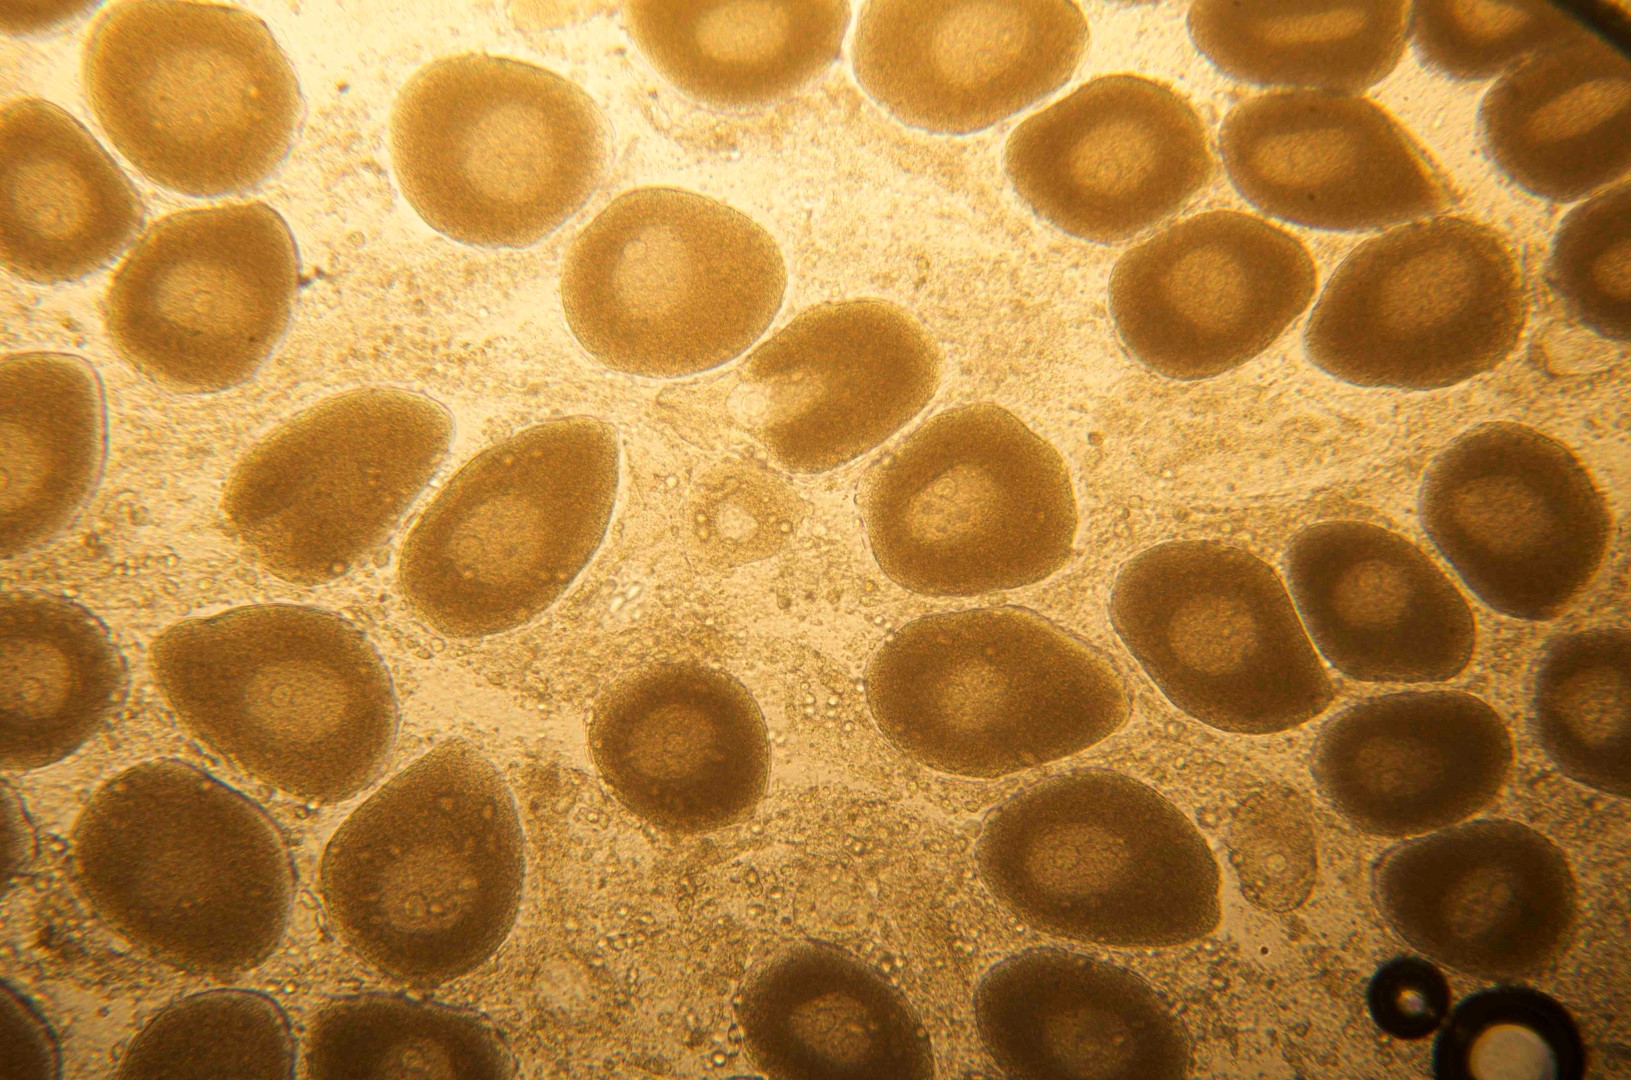 2. Odontaster egg cells